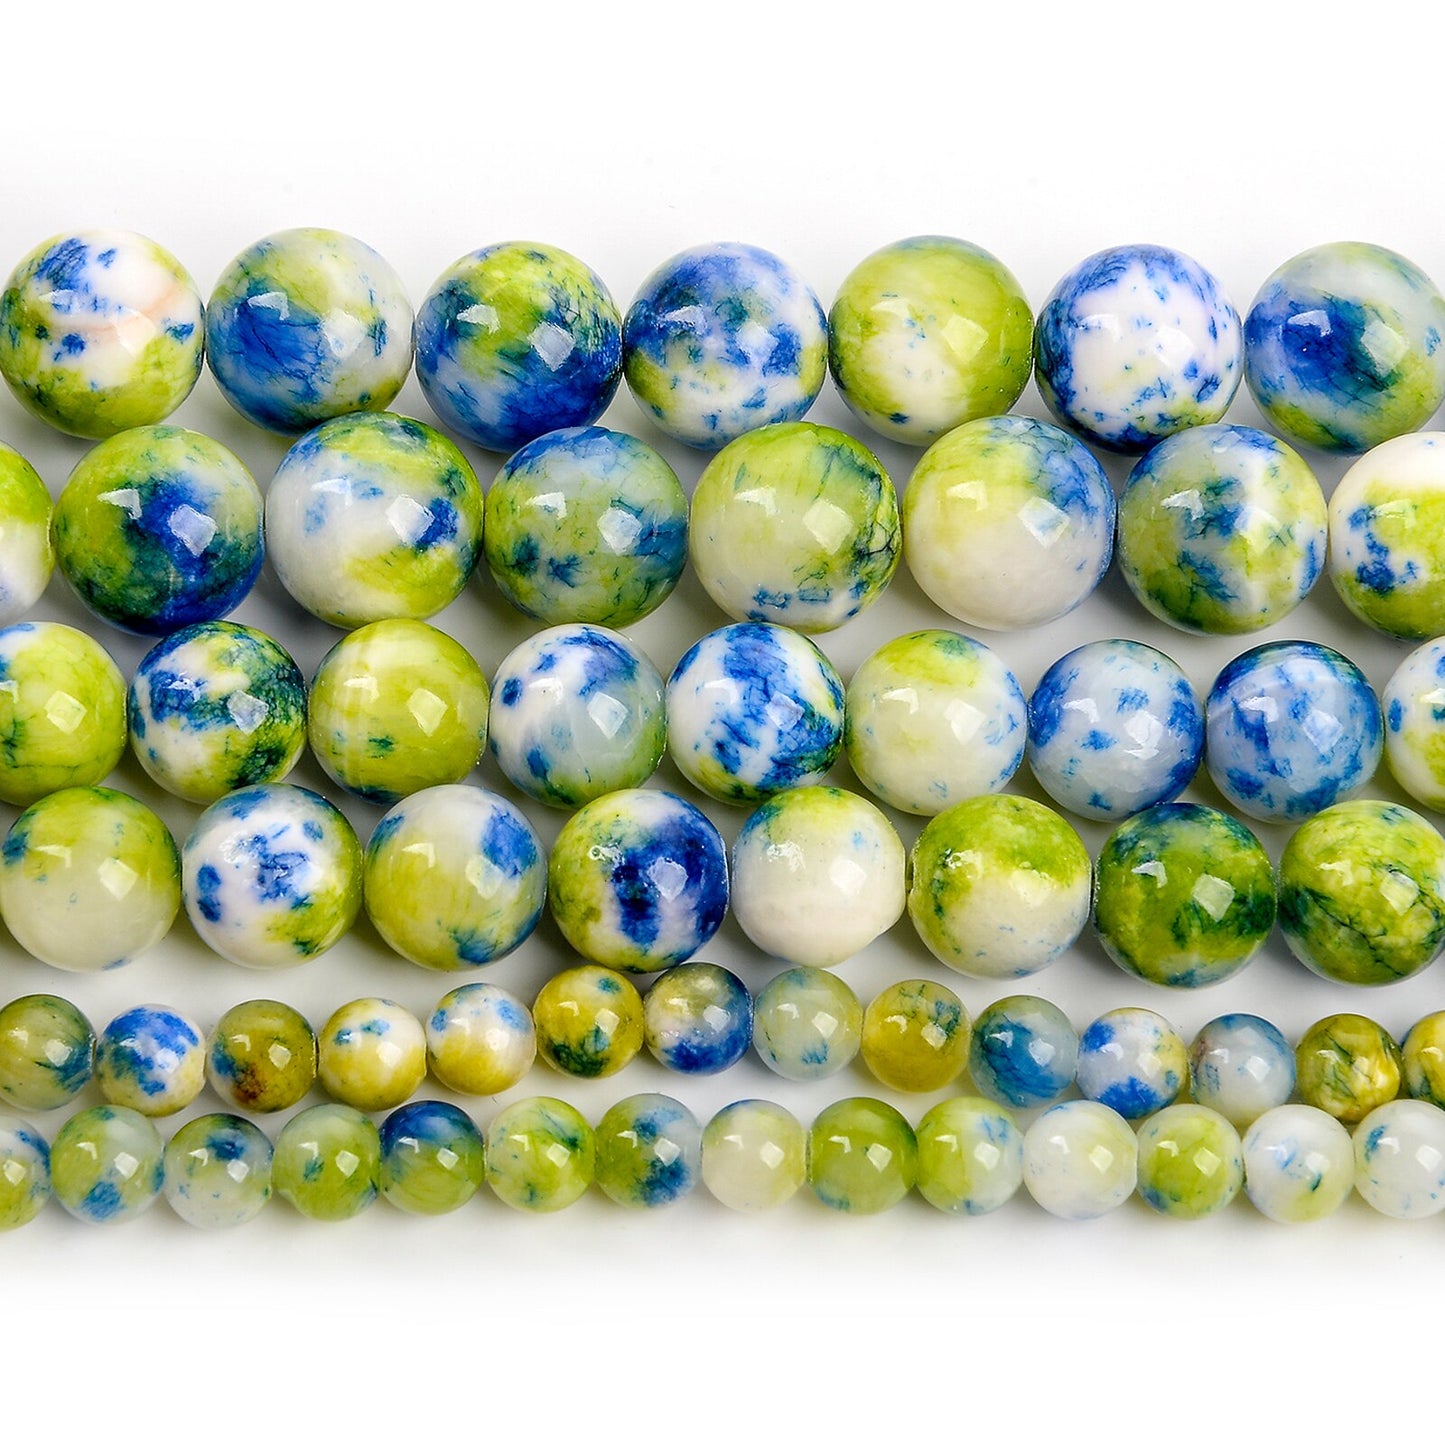 Purple Persian Jade Beads Round Loose Beads